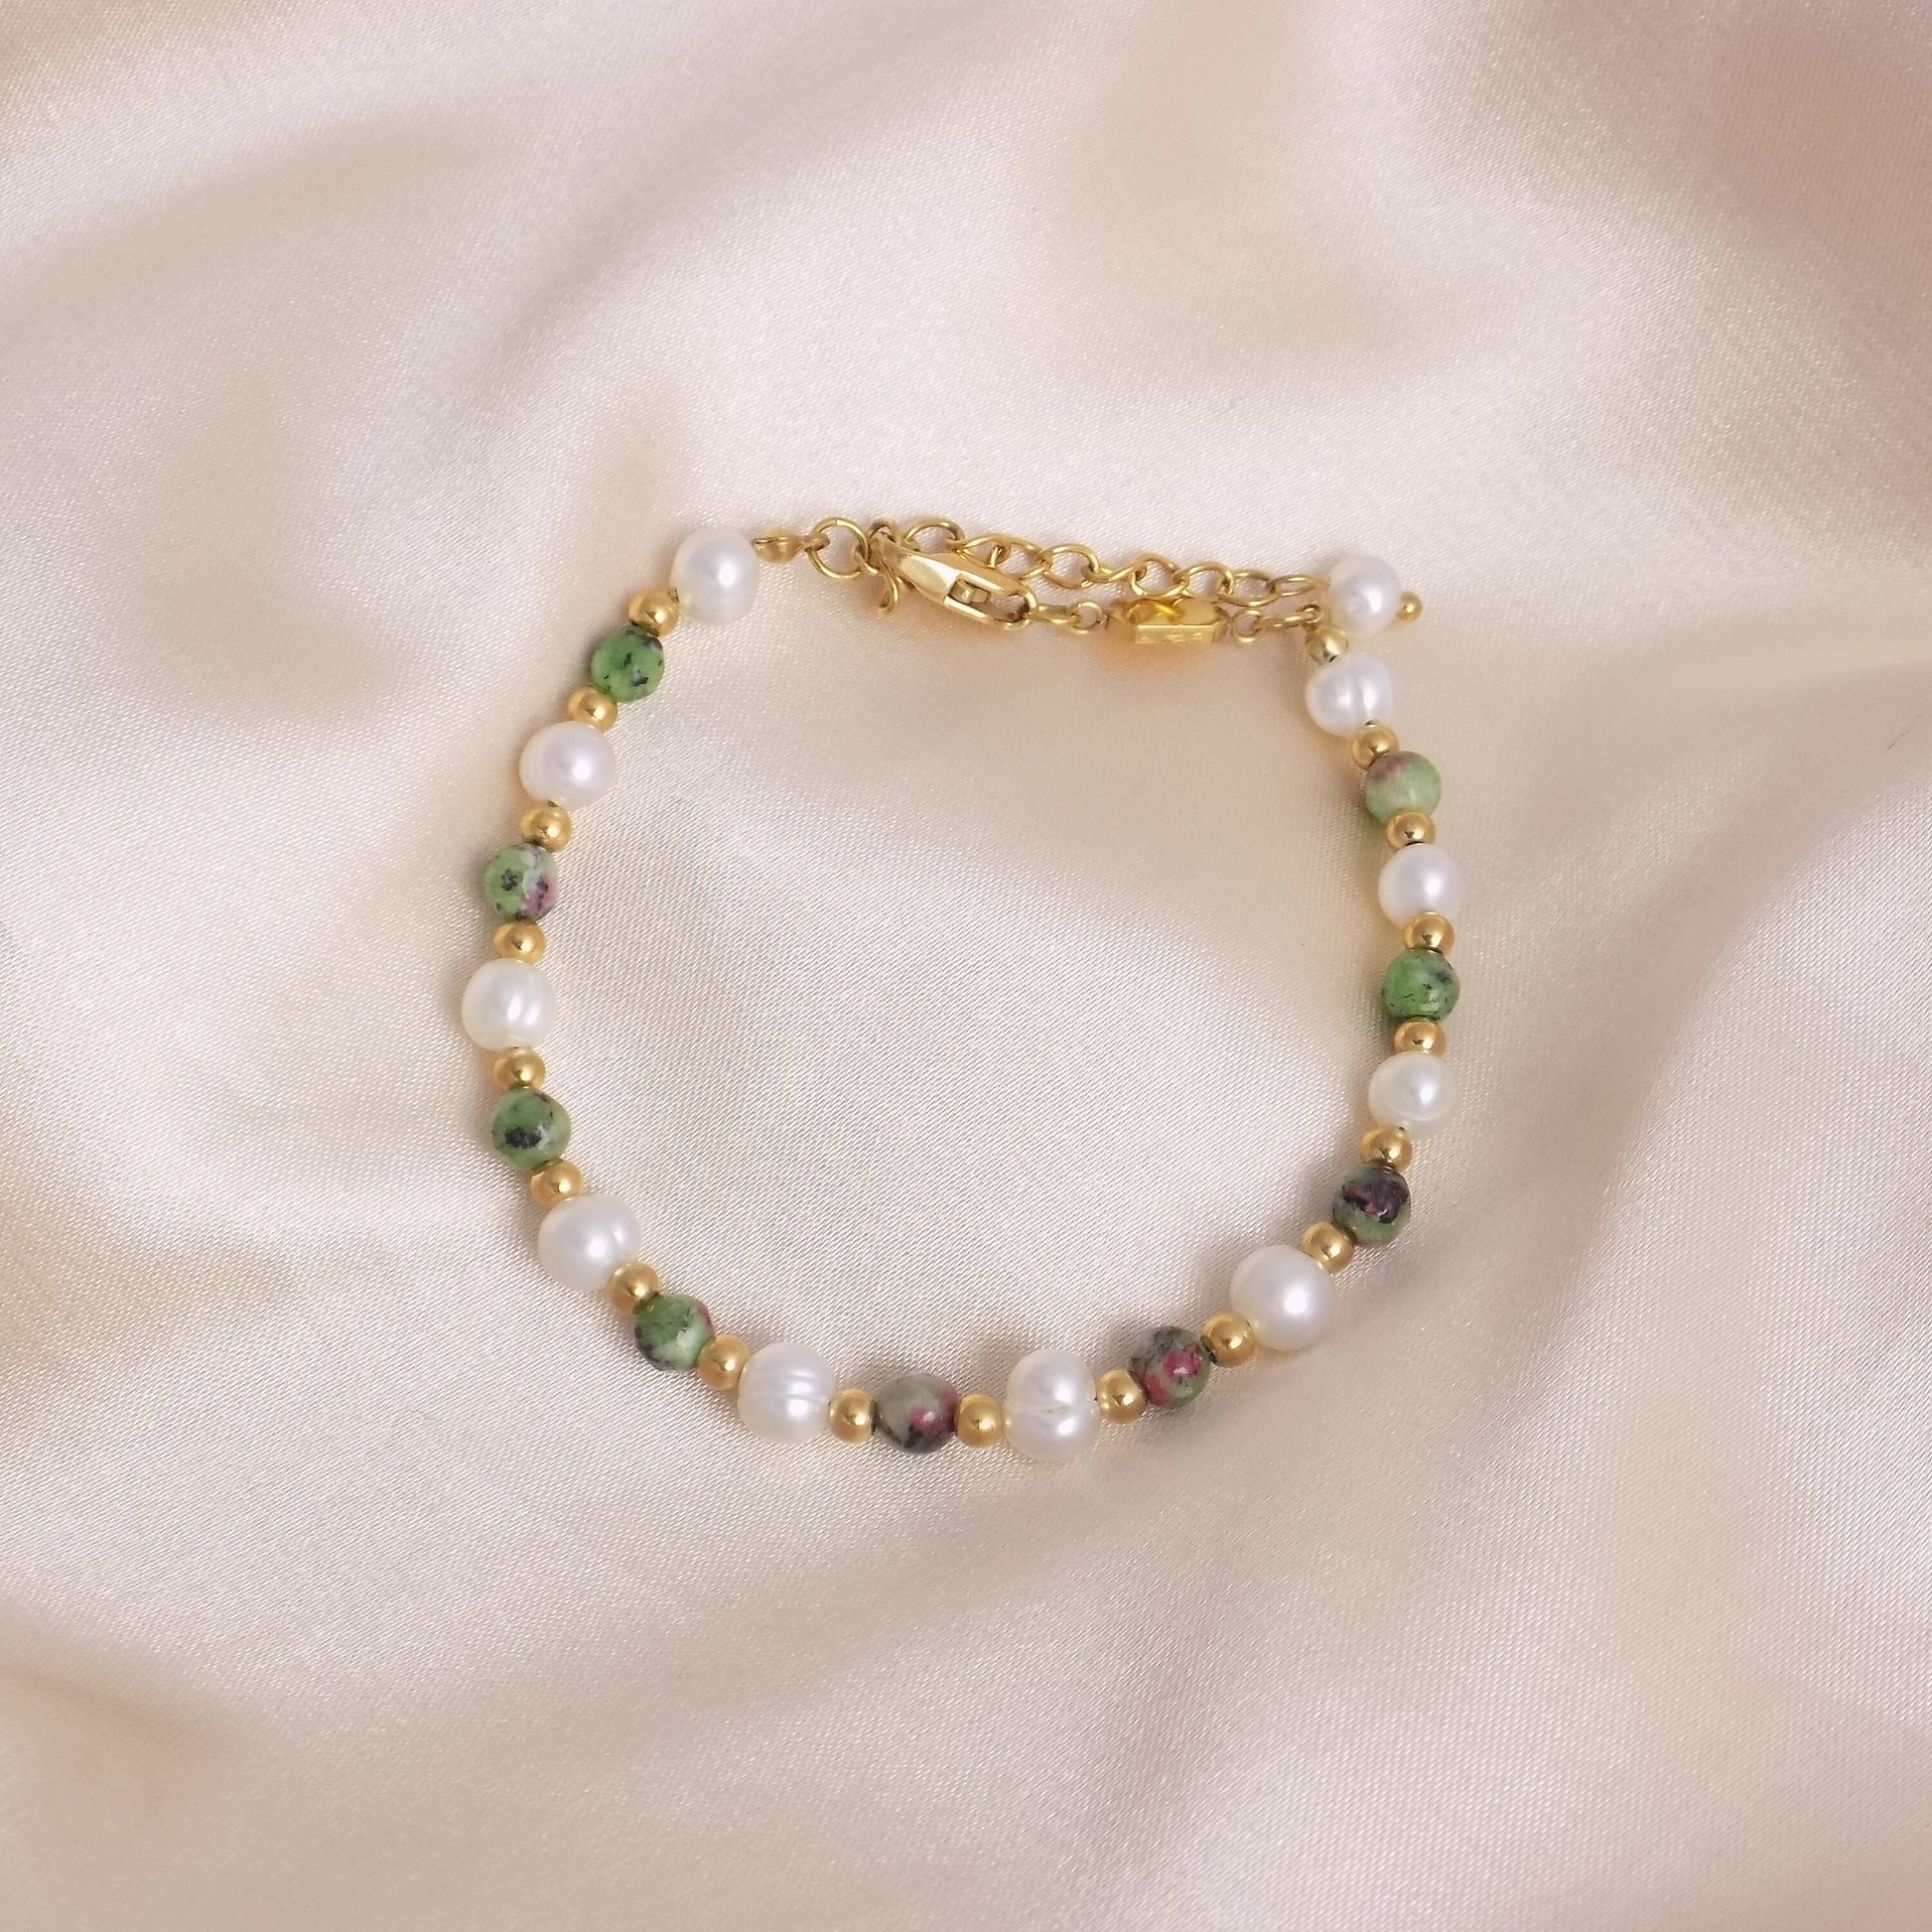 Freshwater Pearl Bracelet Gold - Ruby Zoisite Bracelet - Christmas Gift For Her - M7-143